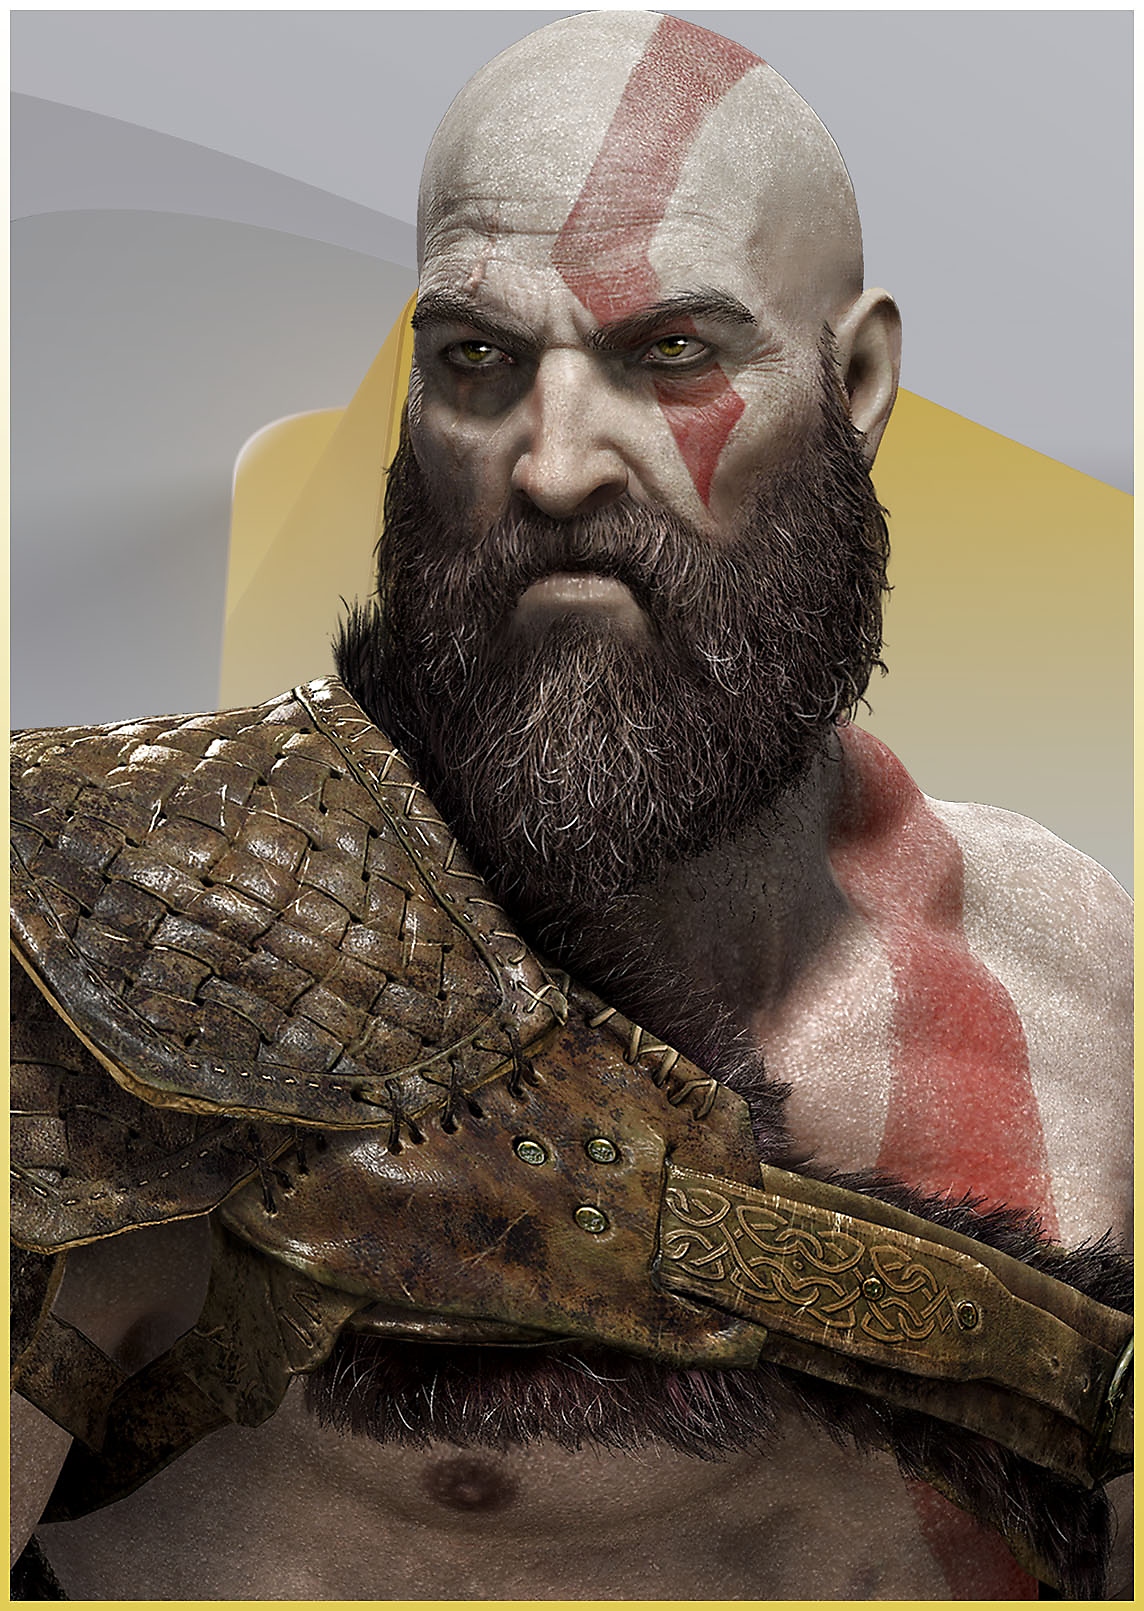 Kratos fra God of War ser vred ud